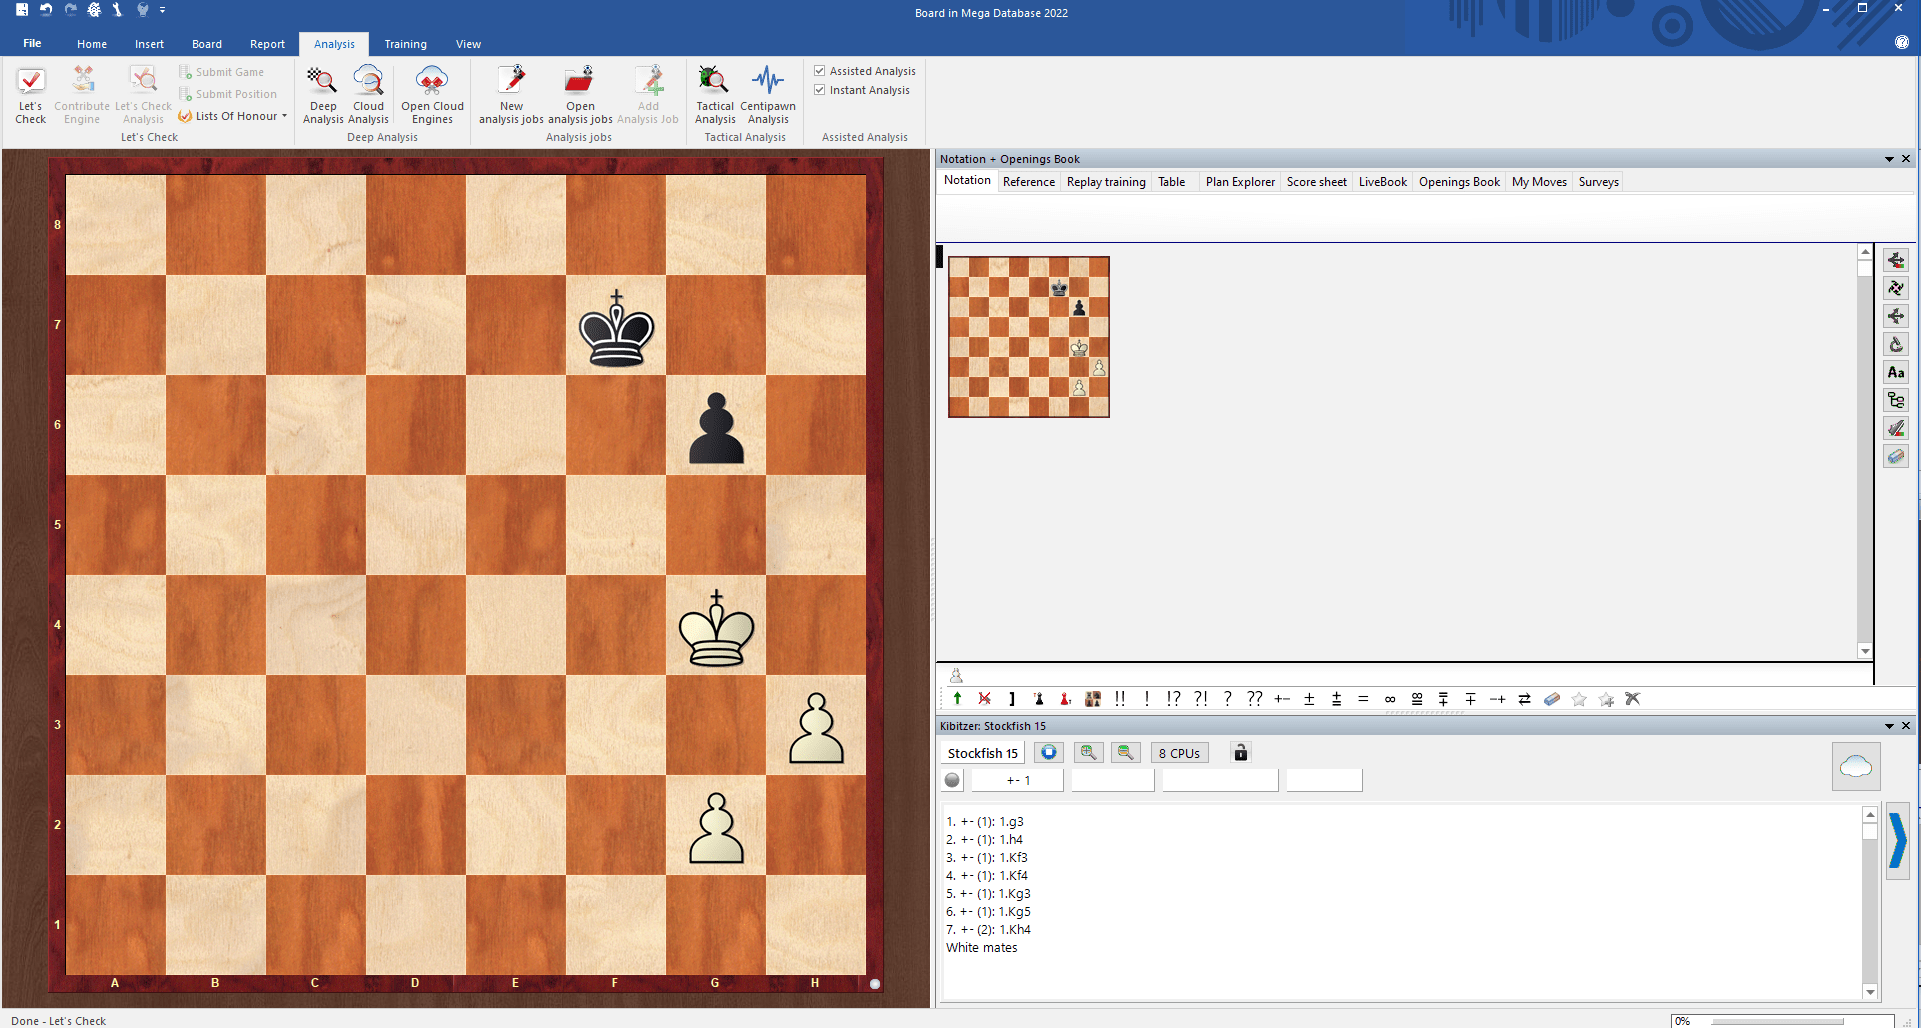 Is ChessBase Worth It? 